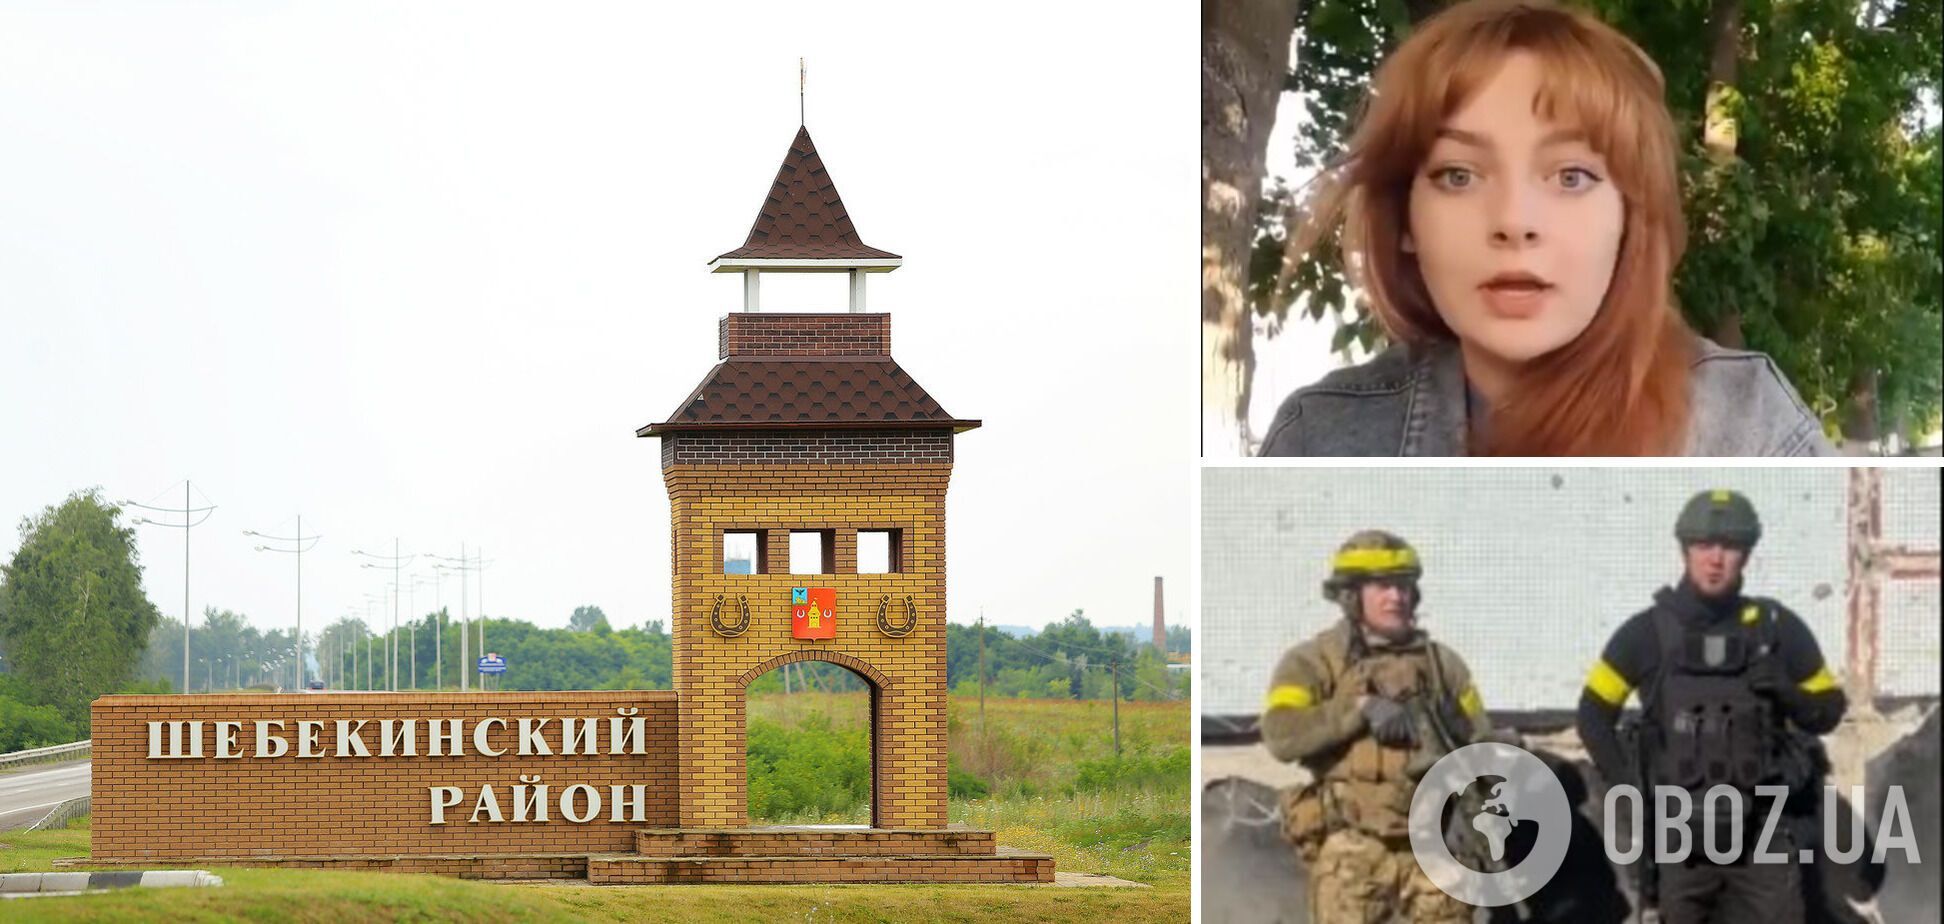 'Выбегали из домов в белье': россиянки пожаловались на 'бомбардировку' Шебекино и заявили, что это 'ломает психику'. Видео